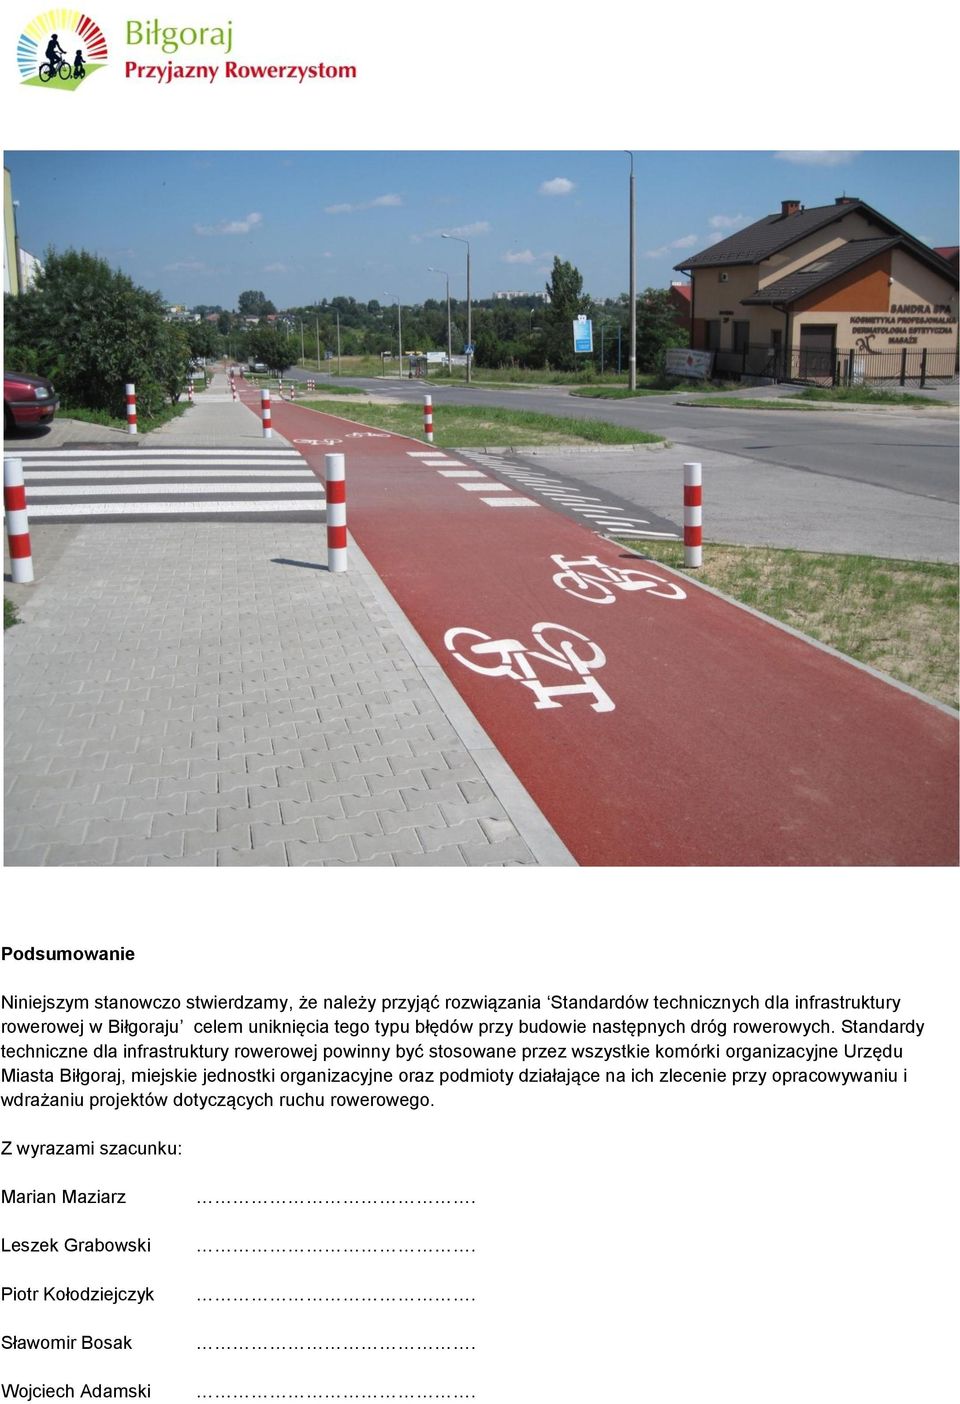 Standardy techniczne dla infrastruktury rowerowej powinny być stosowane przez wszystkie komórki organizacyjne Urzędu Miasta Biłgoraj, miejskie